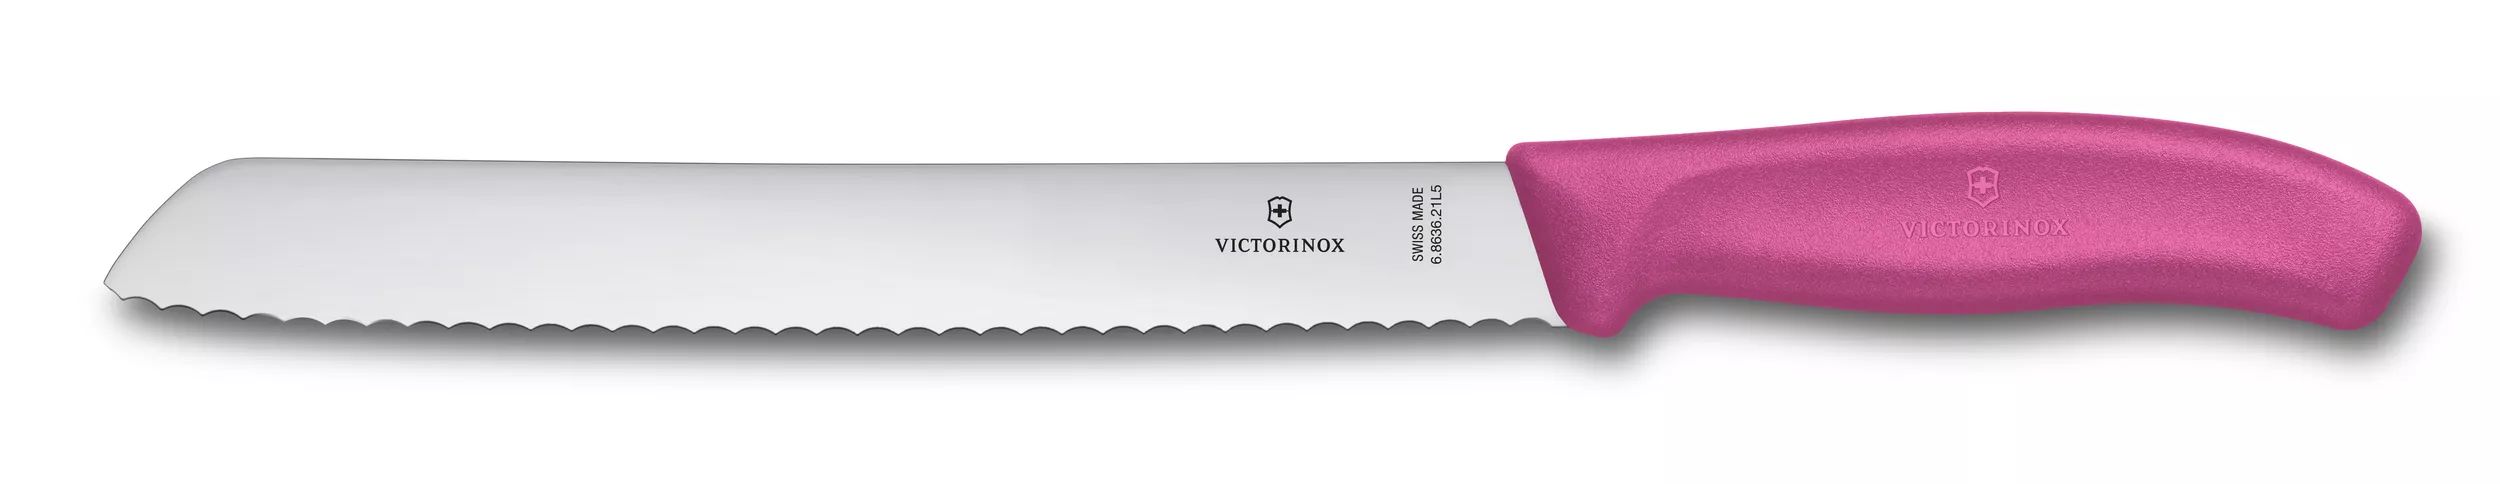 Swiss Classic Bread Knife-6.8636.21L5B